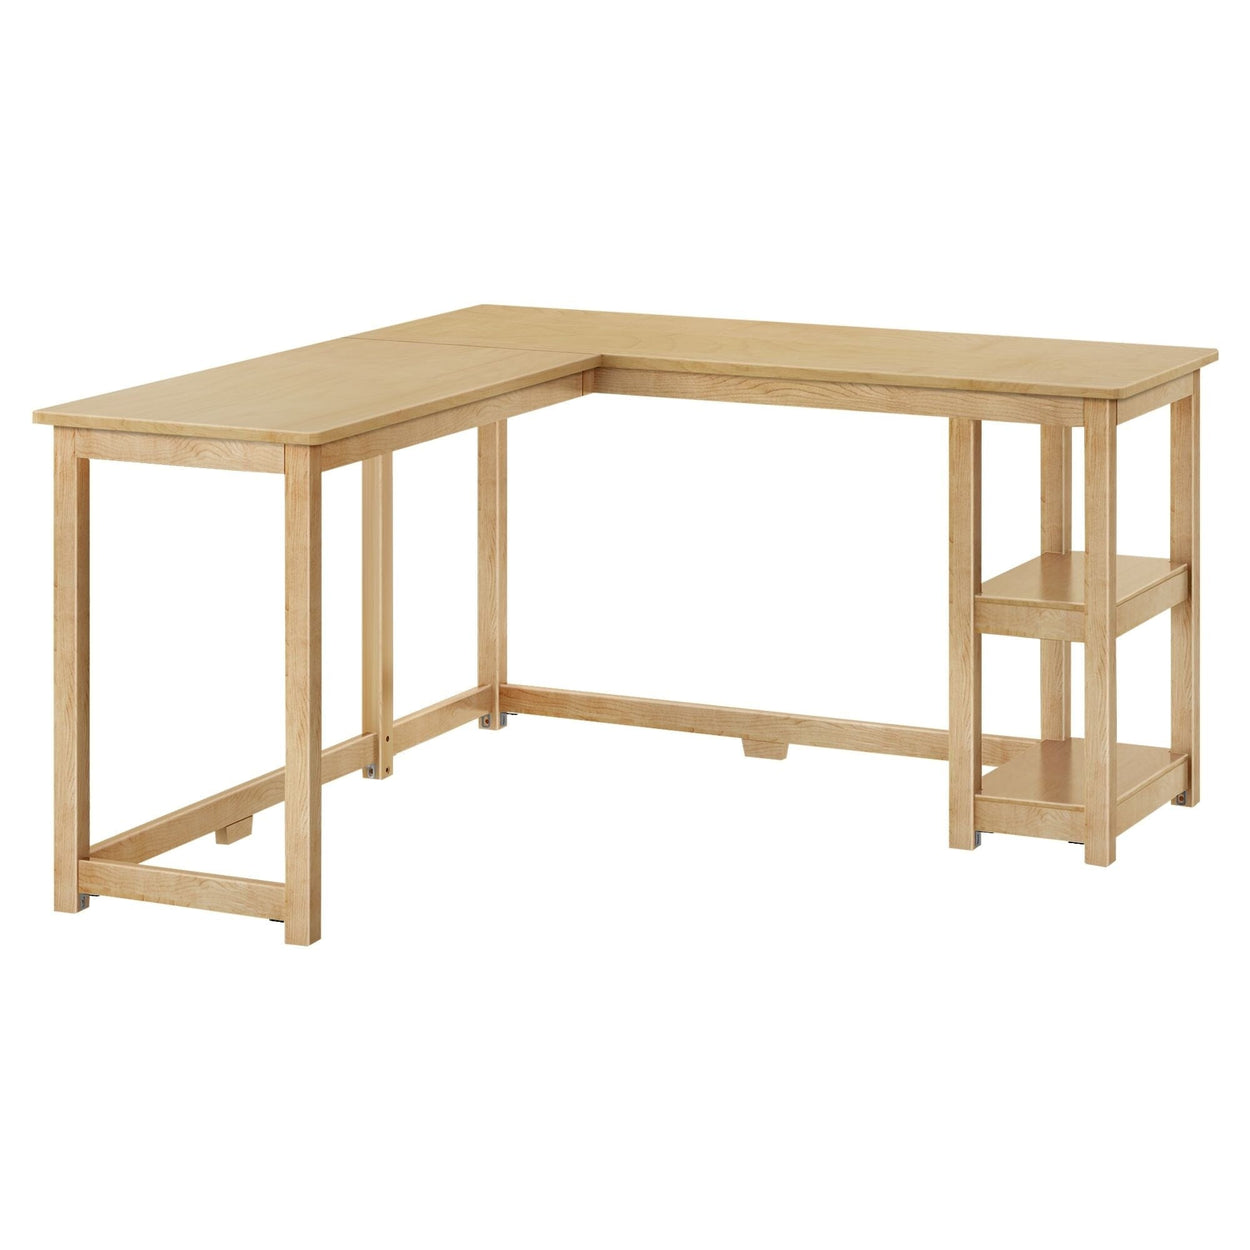 181450-001 : Furniture K/D Corner Desk w/ Shelves, Natural